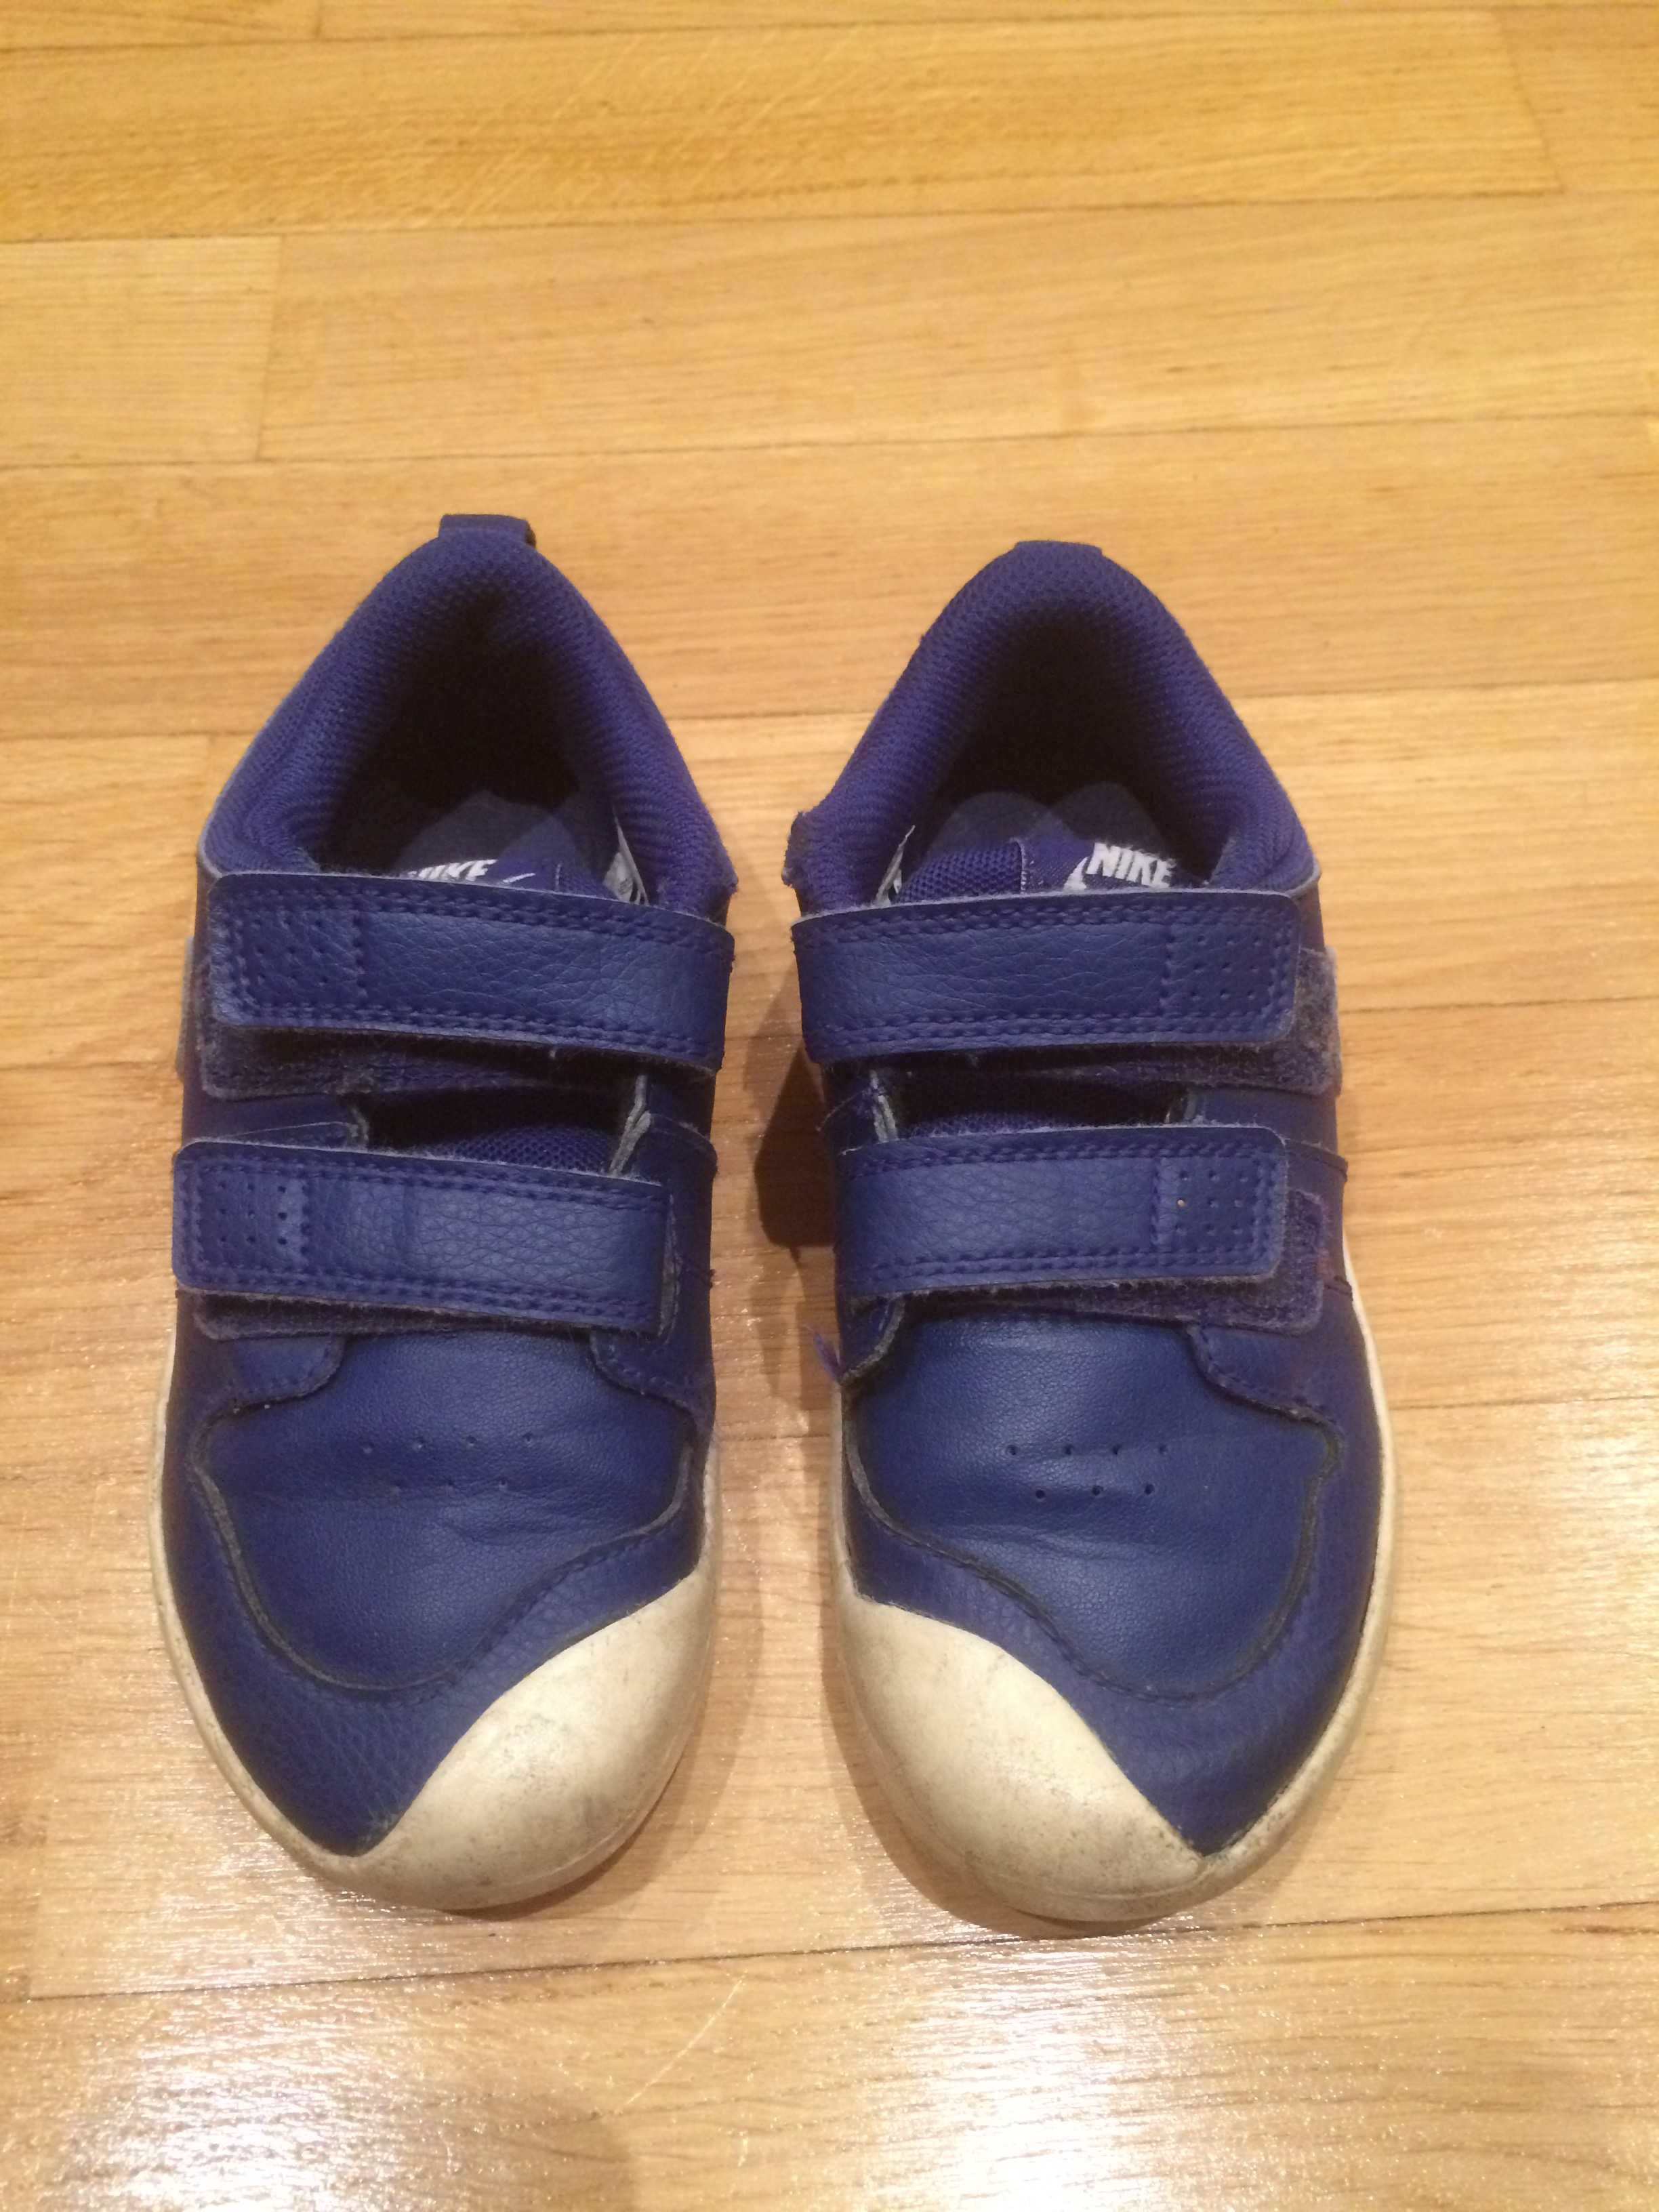 Buty Nike dziecięce oryginalne rozm. 27 na rzepy 16 cm